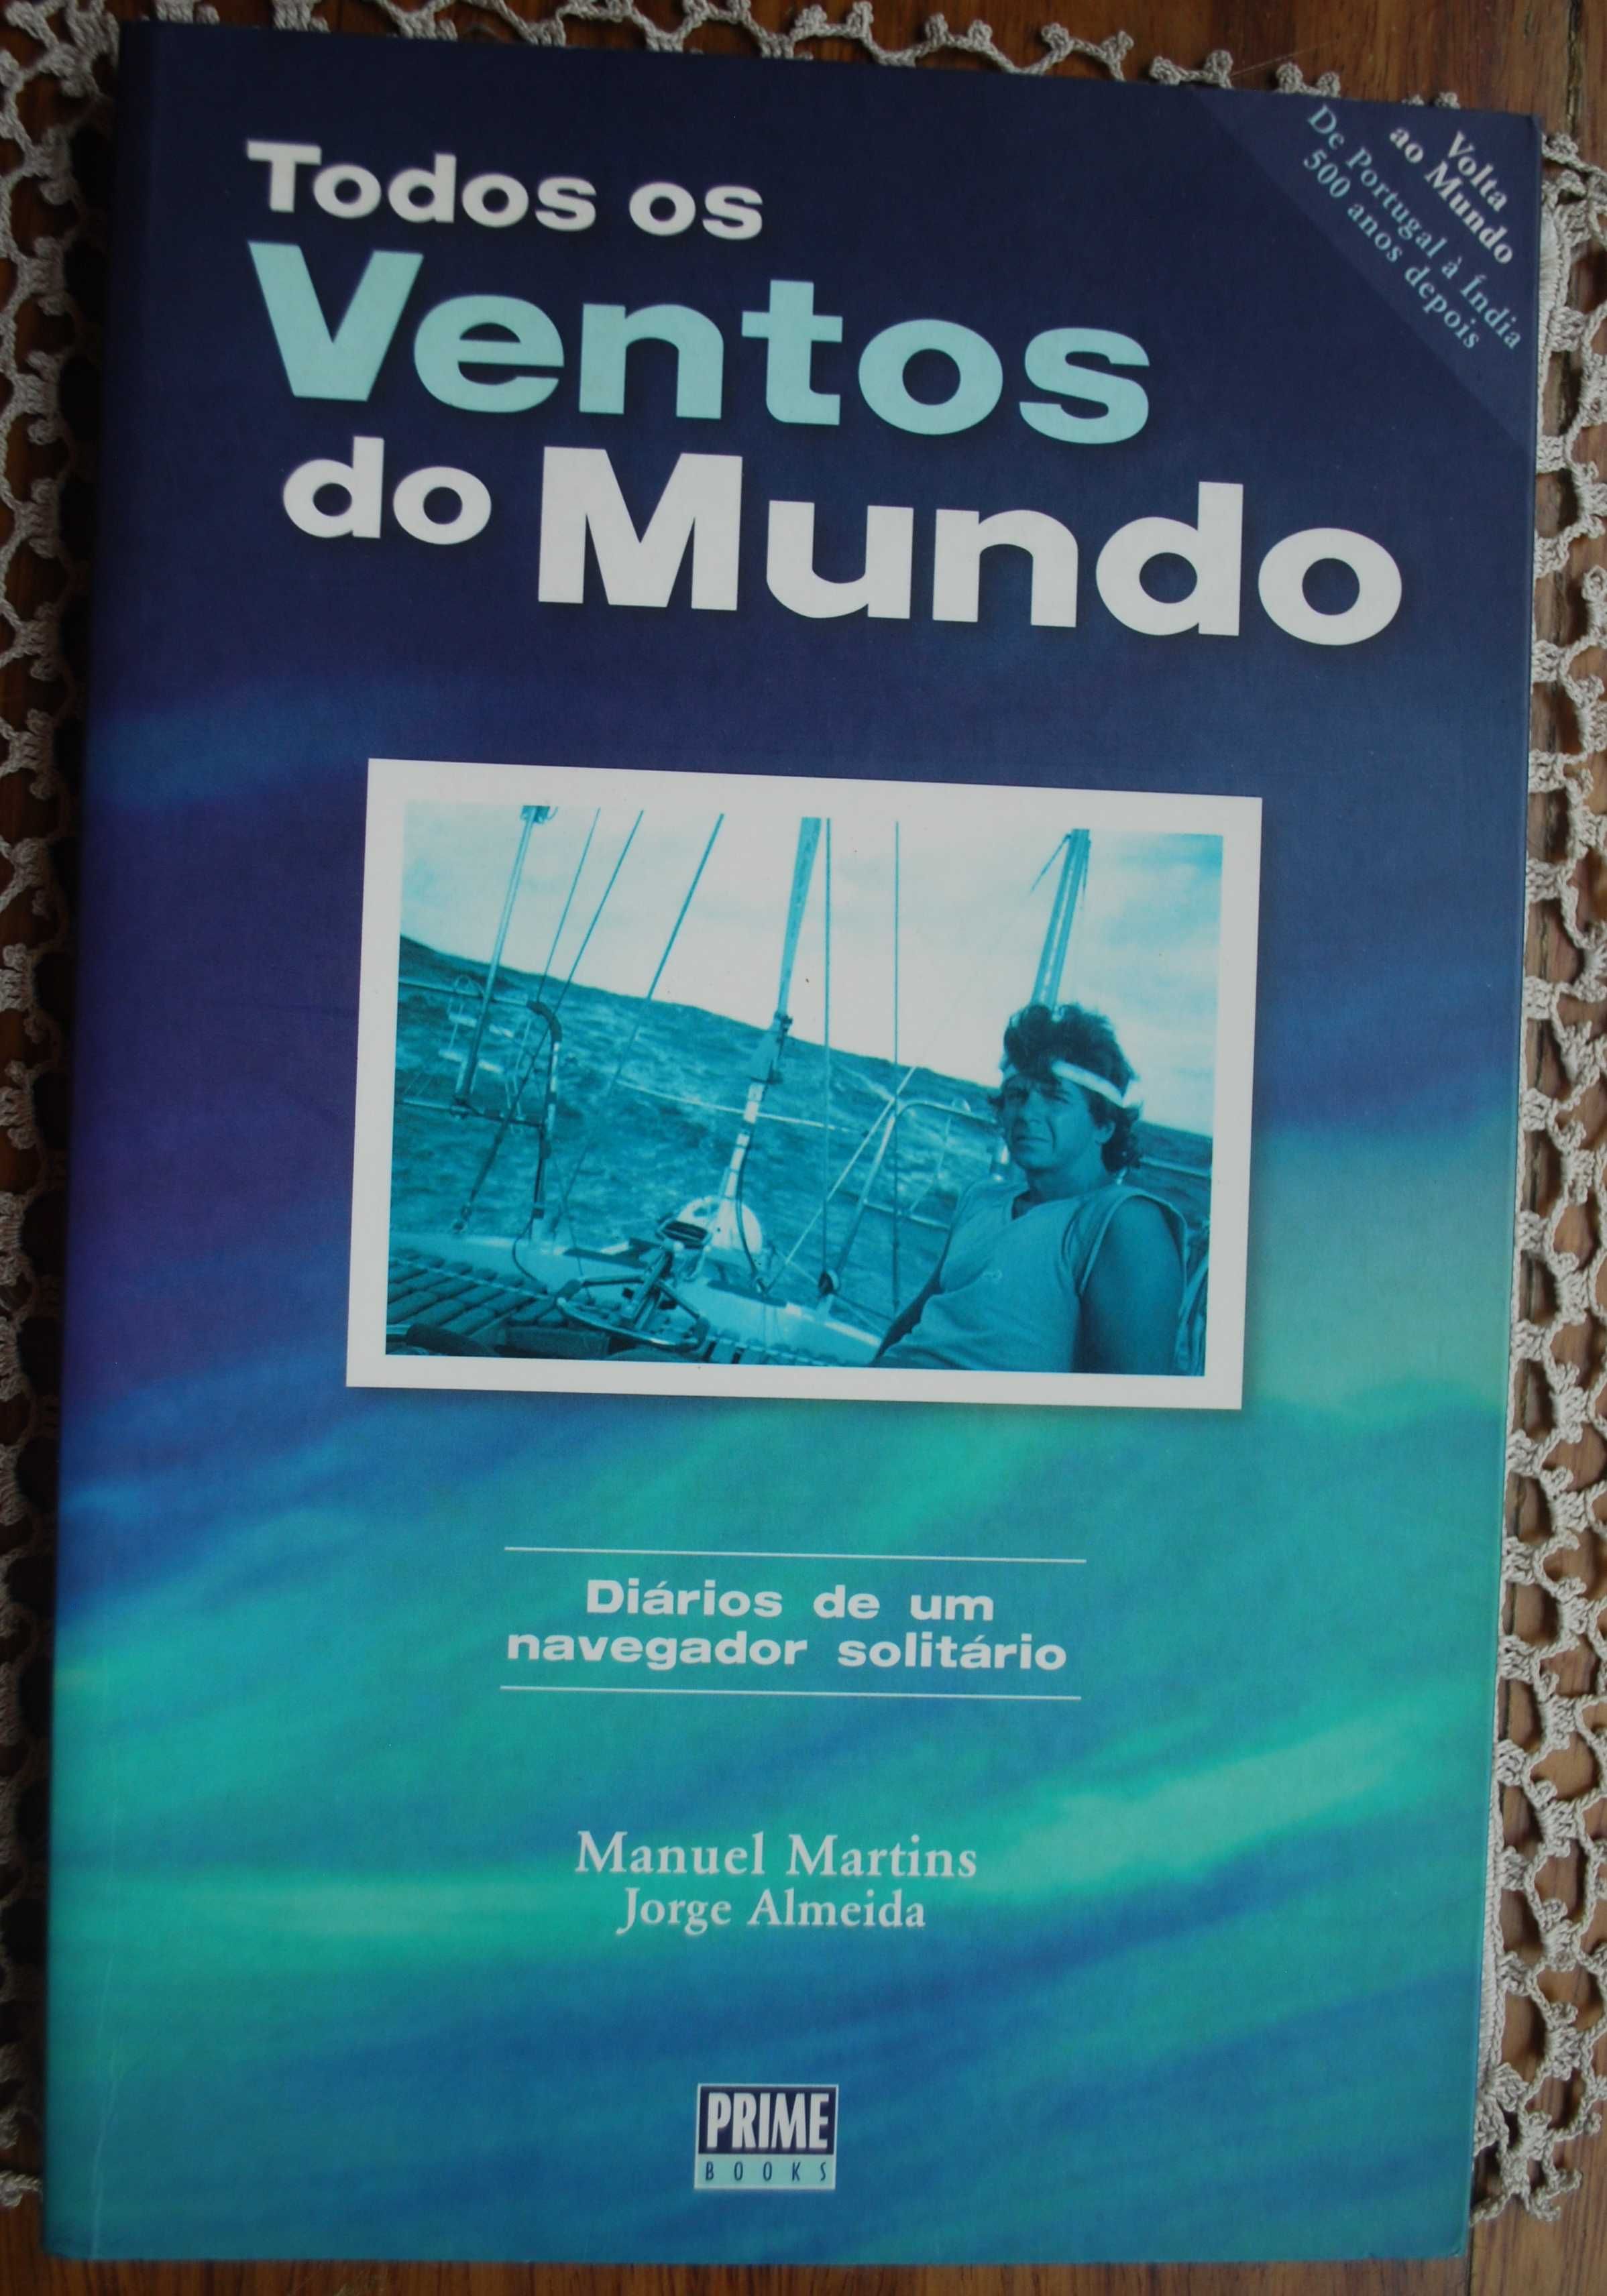 Todos Os Ventos do Mundo de Manuel Martins e Jorge Almeida